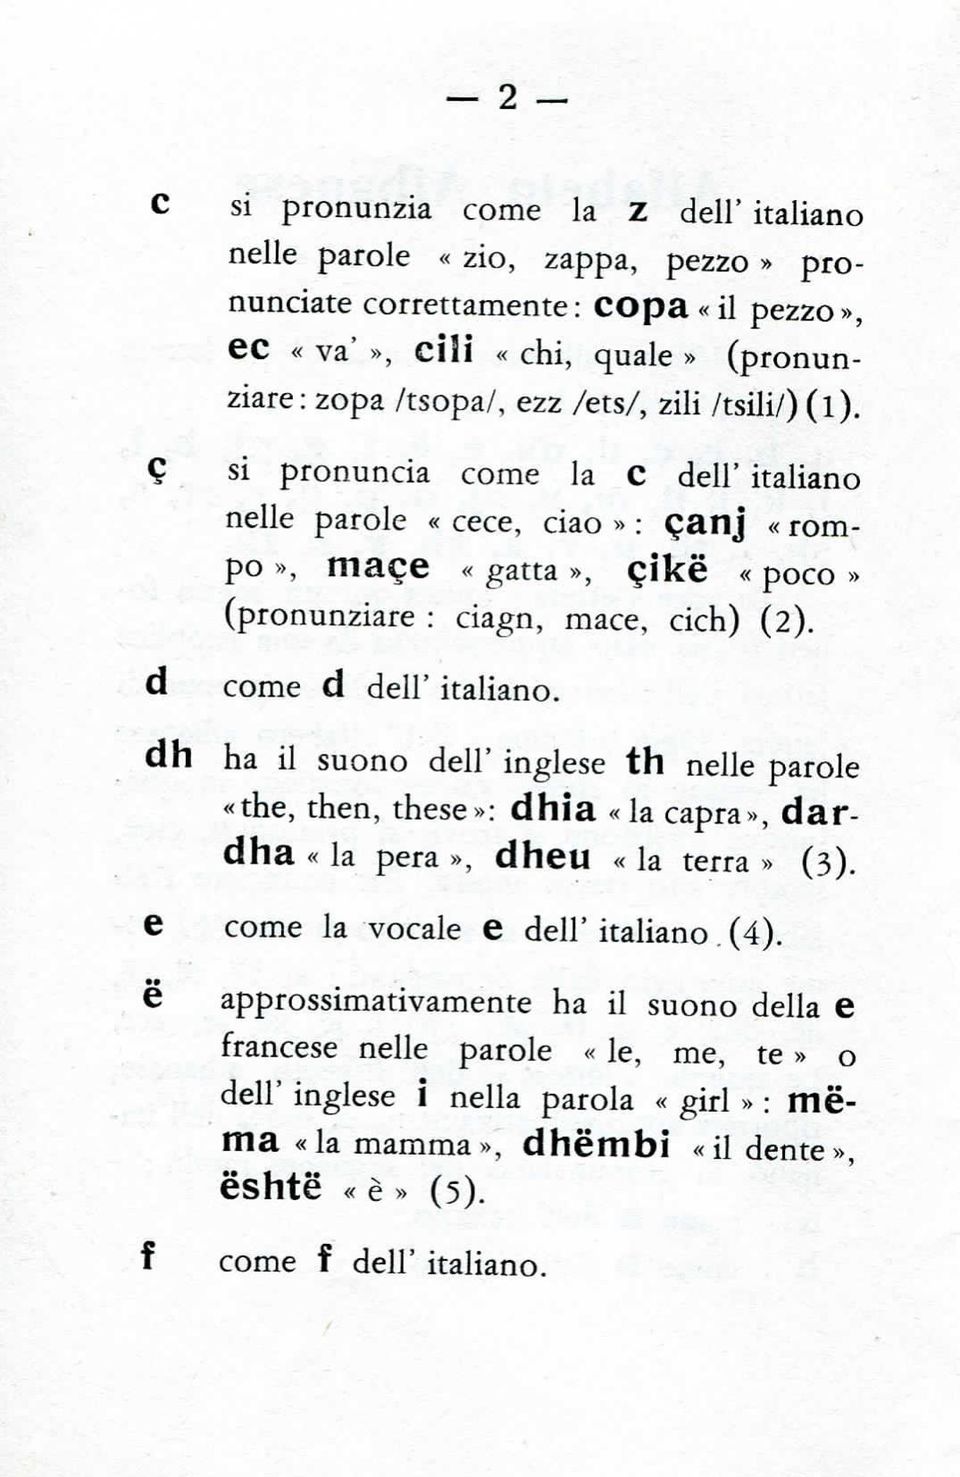 d dh come d dell'italiano. ha il suono dell' inglese th nelle parole «the, then, these»: dhìa «la capra», dardha «la pera», dheu «la terra» (3). e come la vocale e dell' italiano.